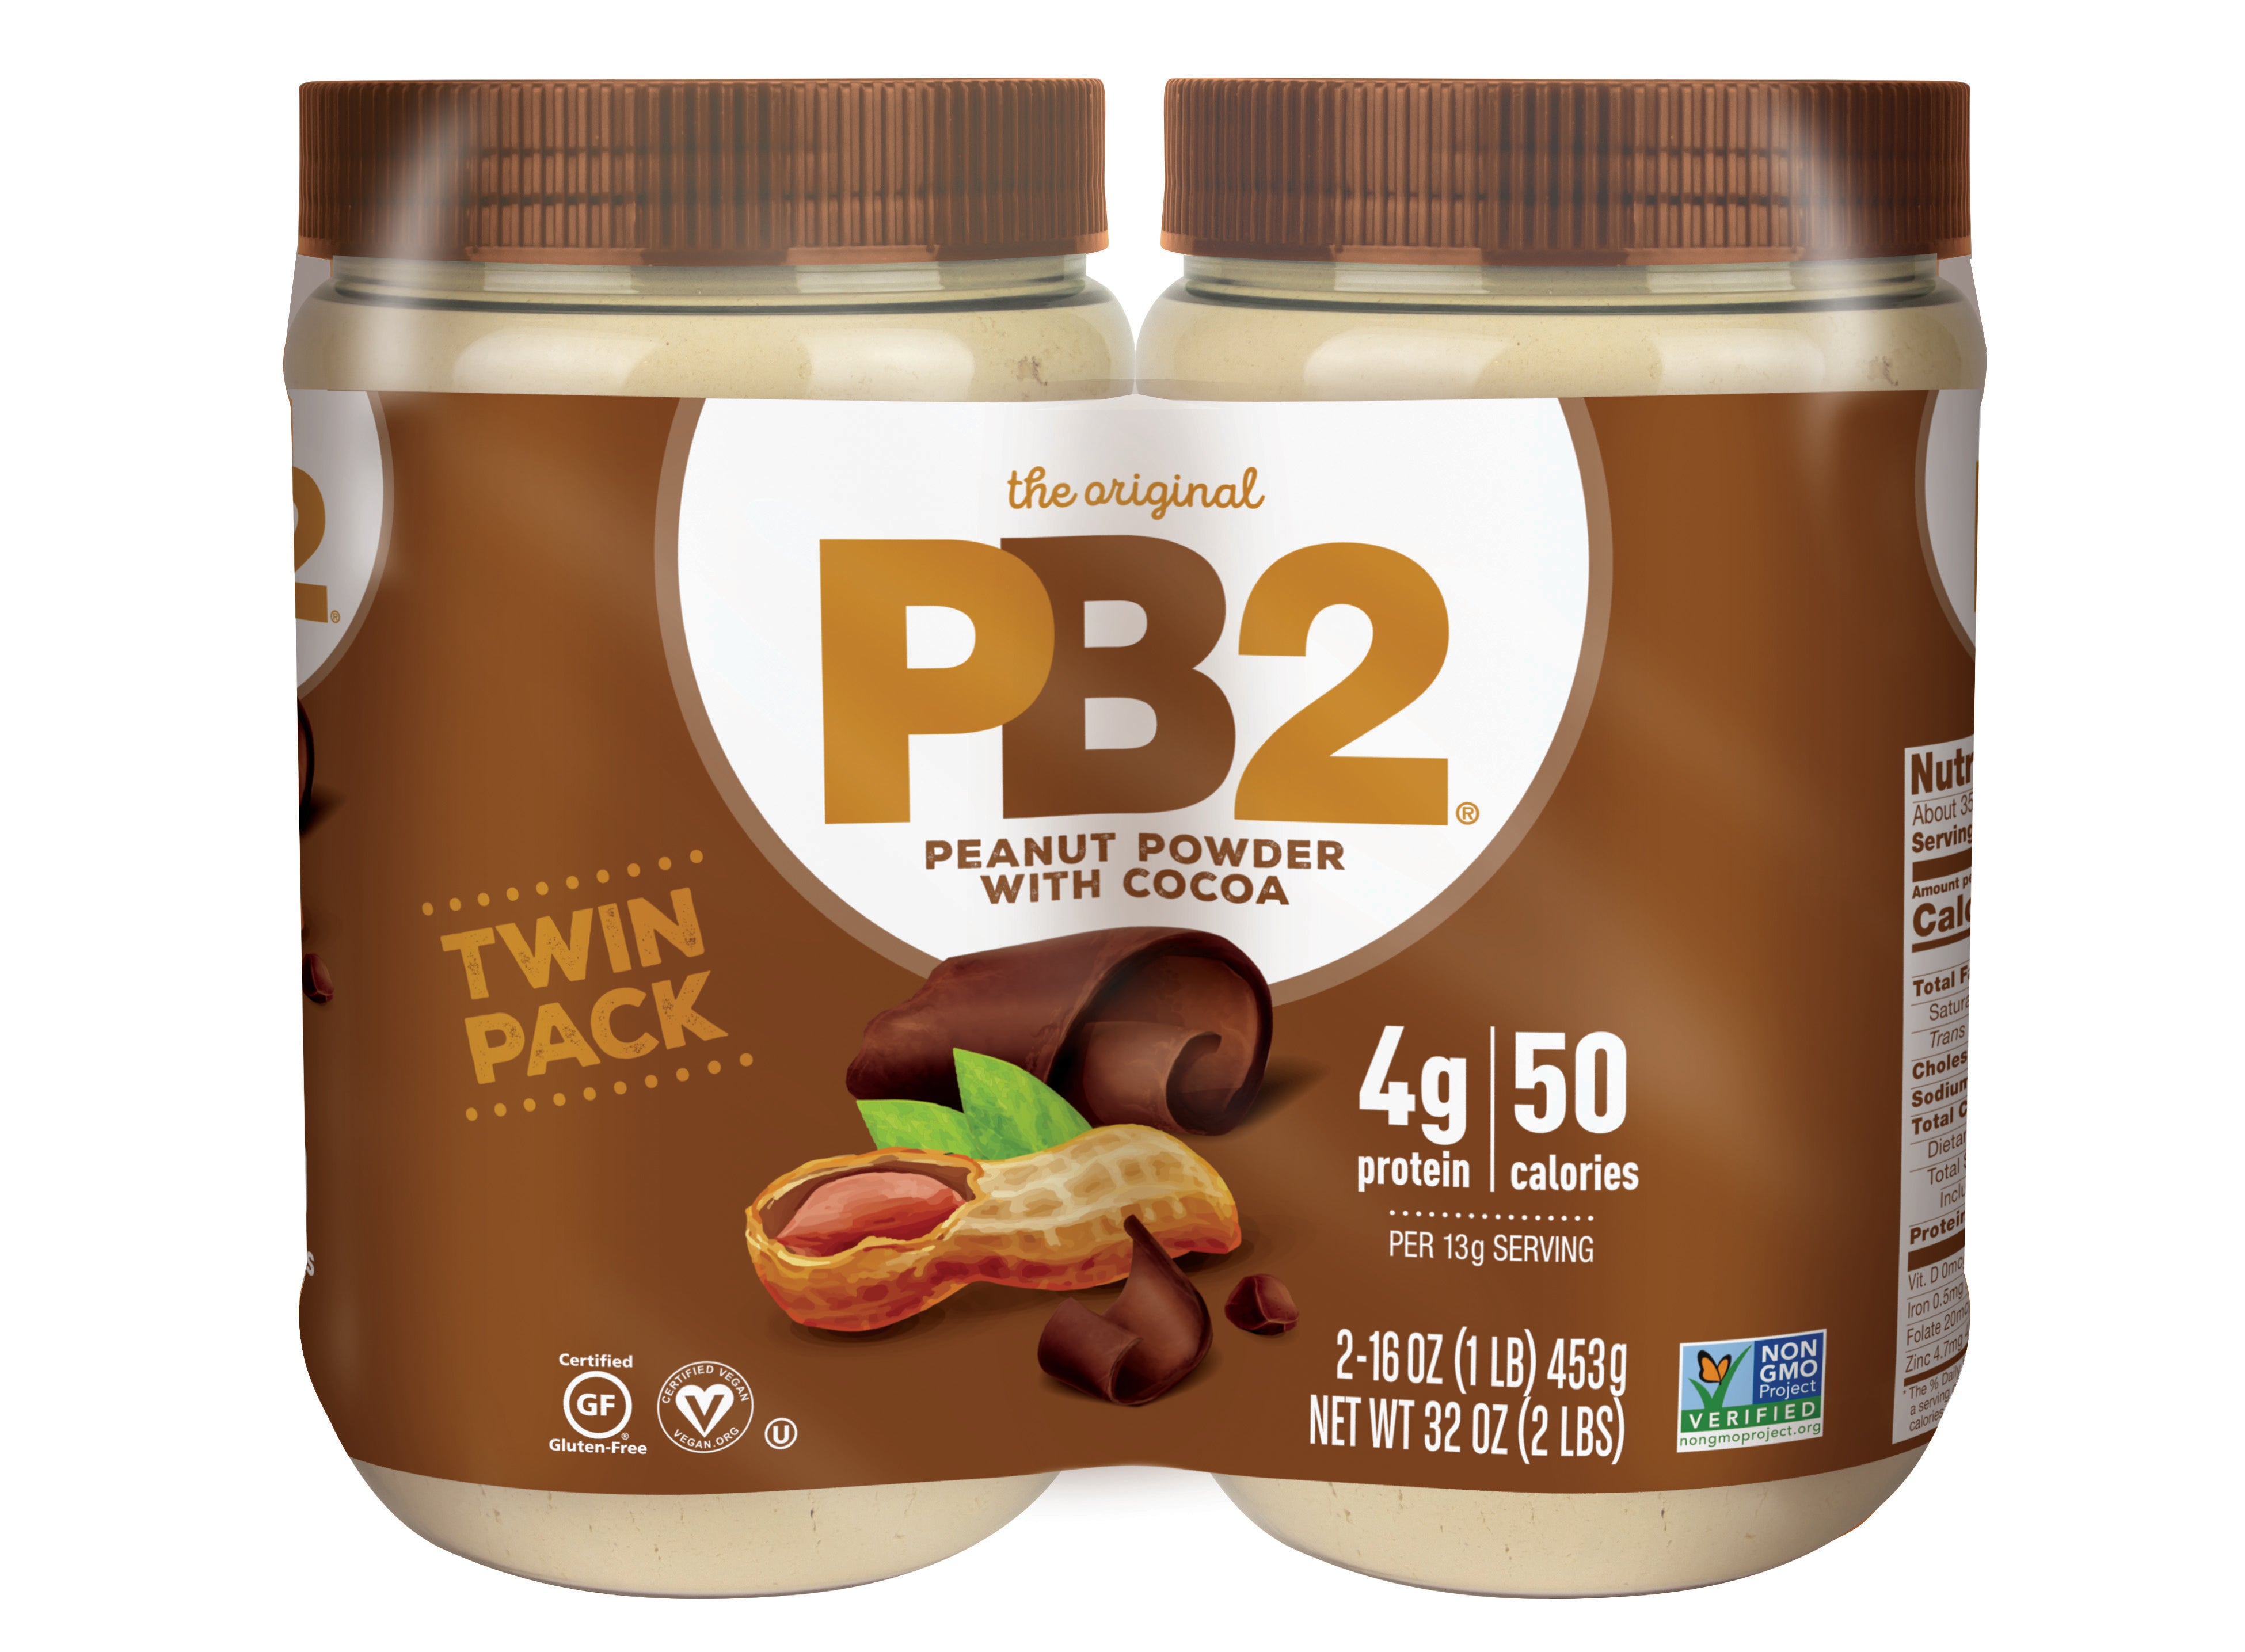 PB2 Powdered Peanut Butter, 1lb Jar (2-pack)